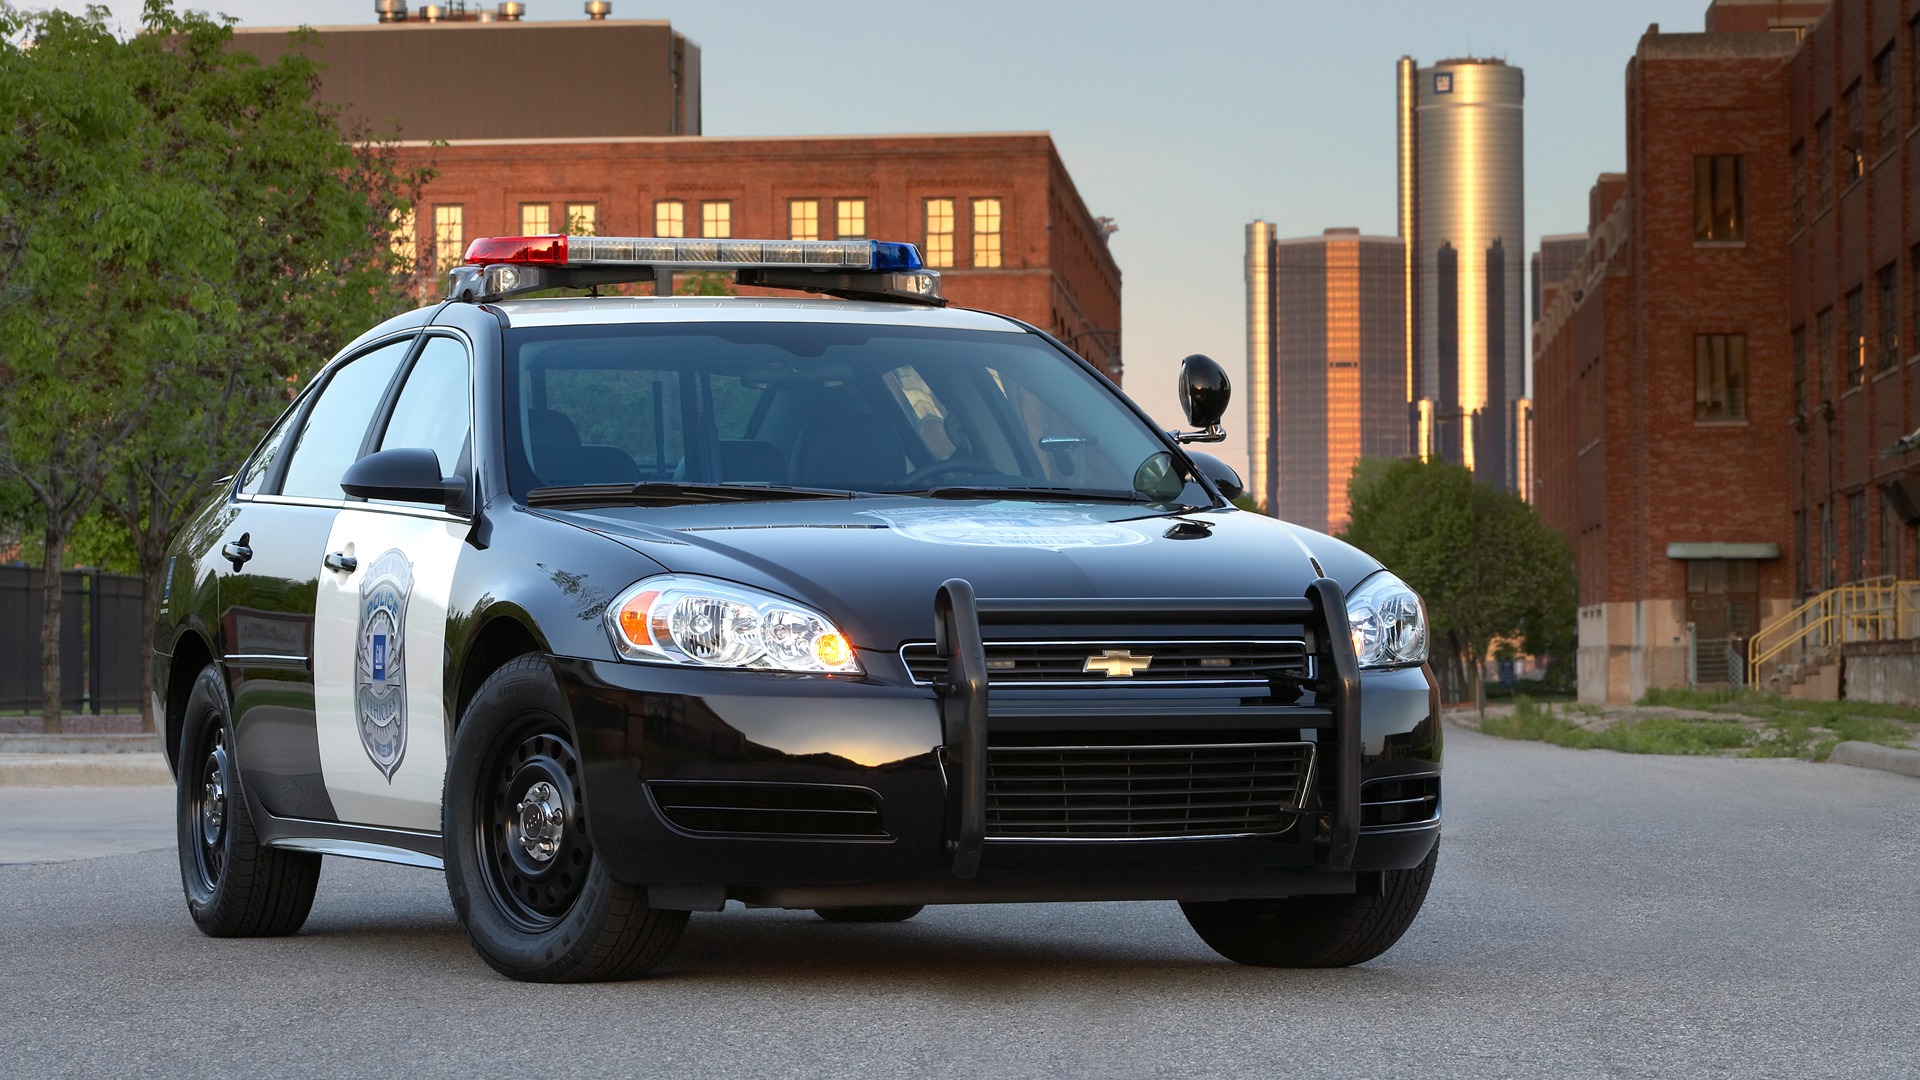 Chevrolet Impala Polizeifahrzeug - 2011 HD Wallpaper #3 - 1920x1080